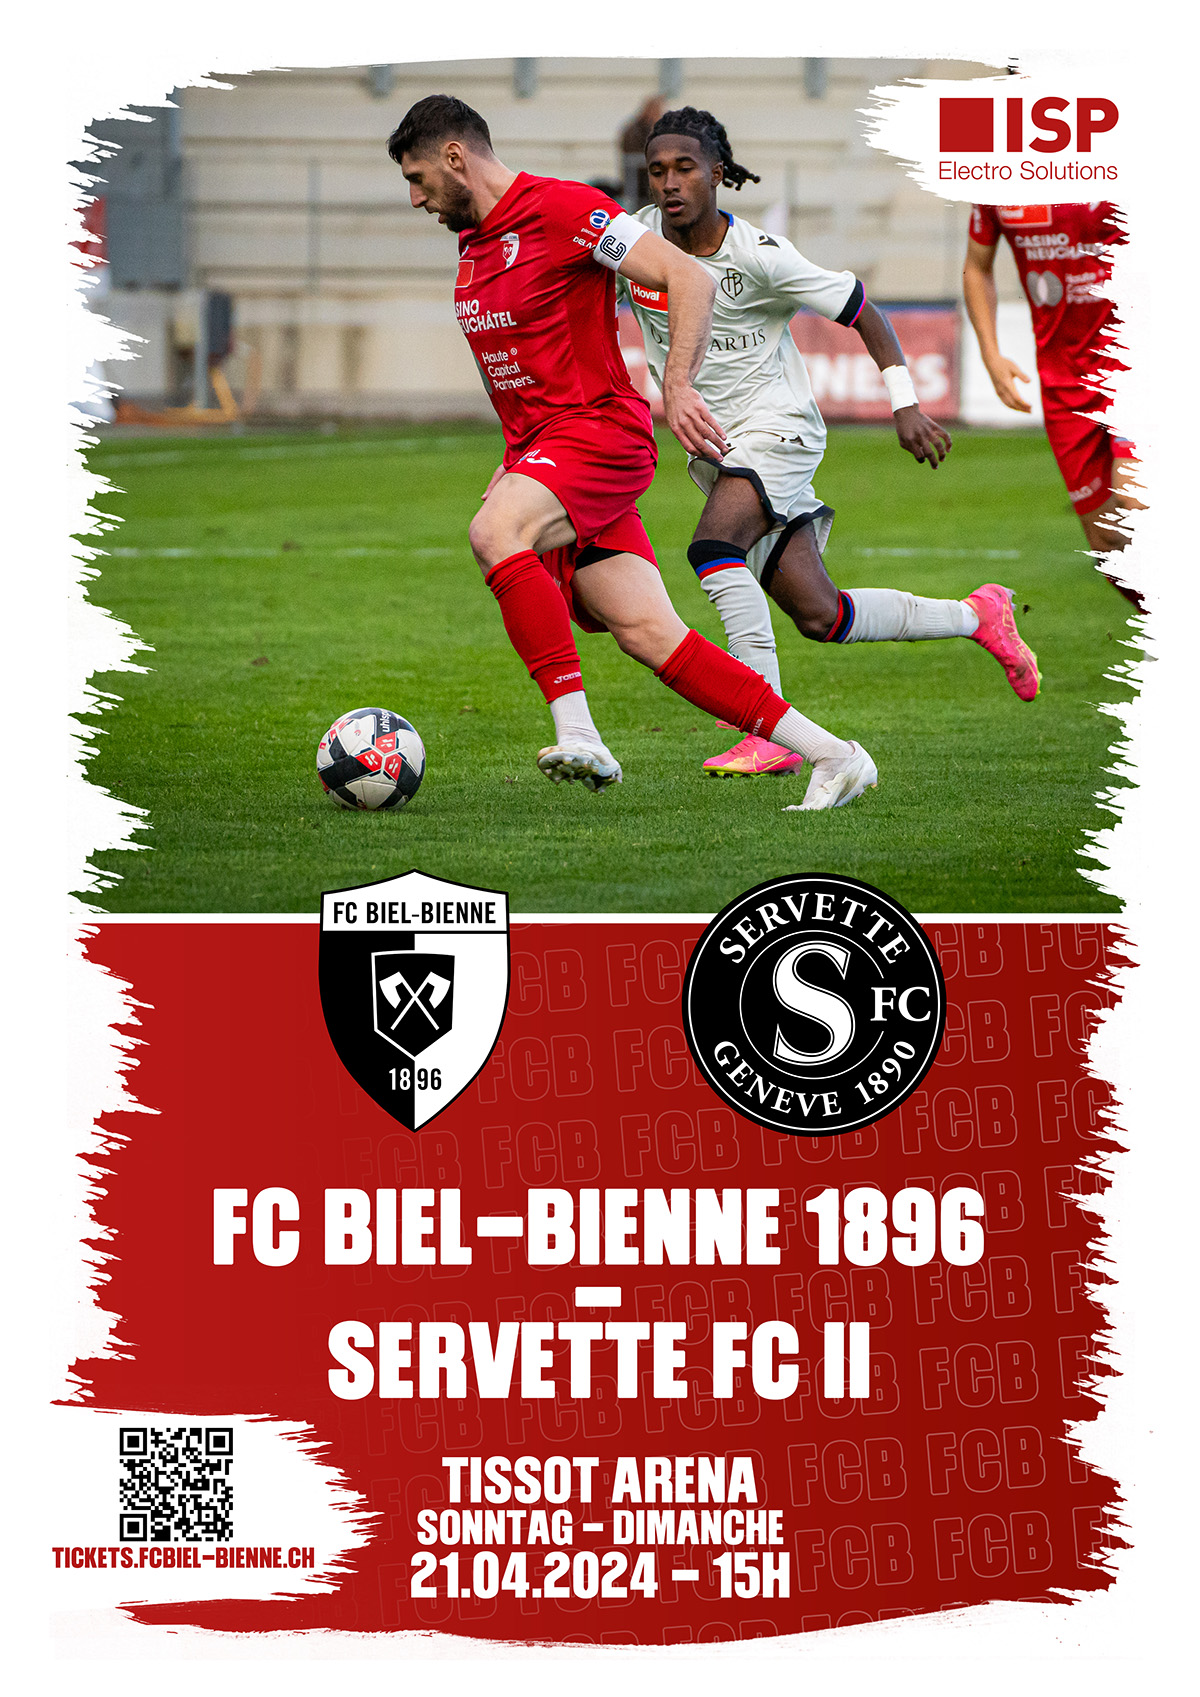 Herzlich willkommen dem Servette FC U21 und seinen mitgereisten Fans